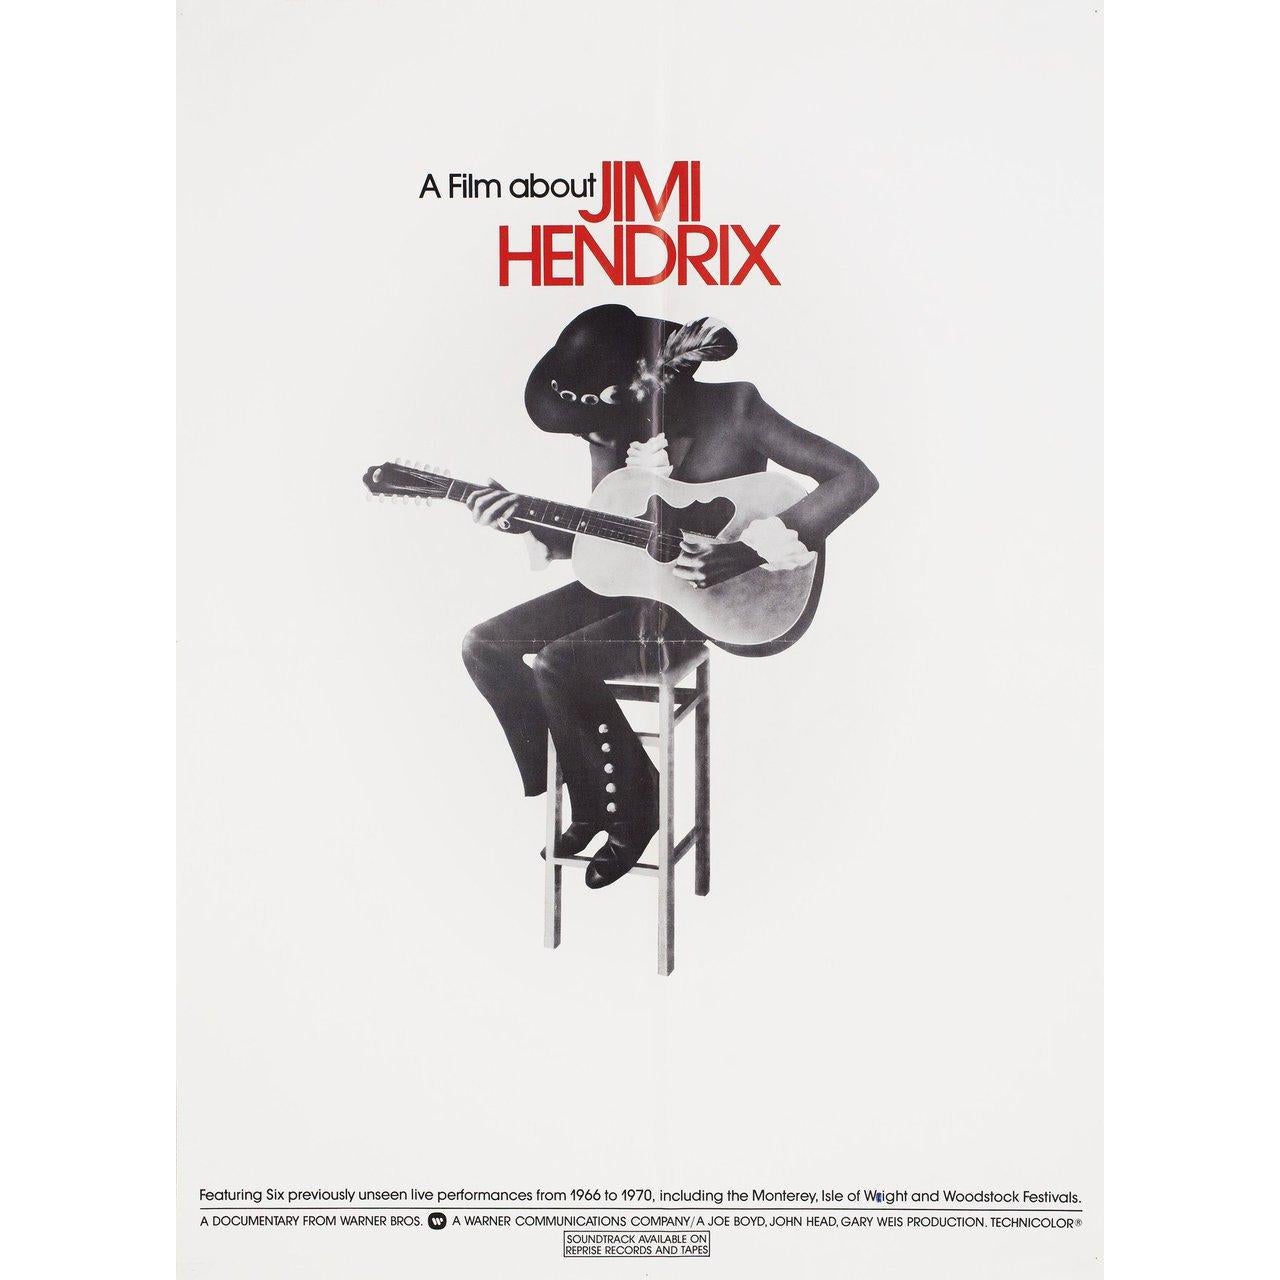 Originales US-Plakat von 1973 für den Dokumentarfilm A Film about Jimi Hendrix unter der Regie von Joe Boyd / John Head / Gary Weis mit Arthur Allen / Albert Allen / Stella Benabon / Eric Barrett. Sehr guter Zustand, gefaltet. Viele Originalplakate